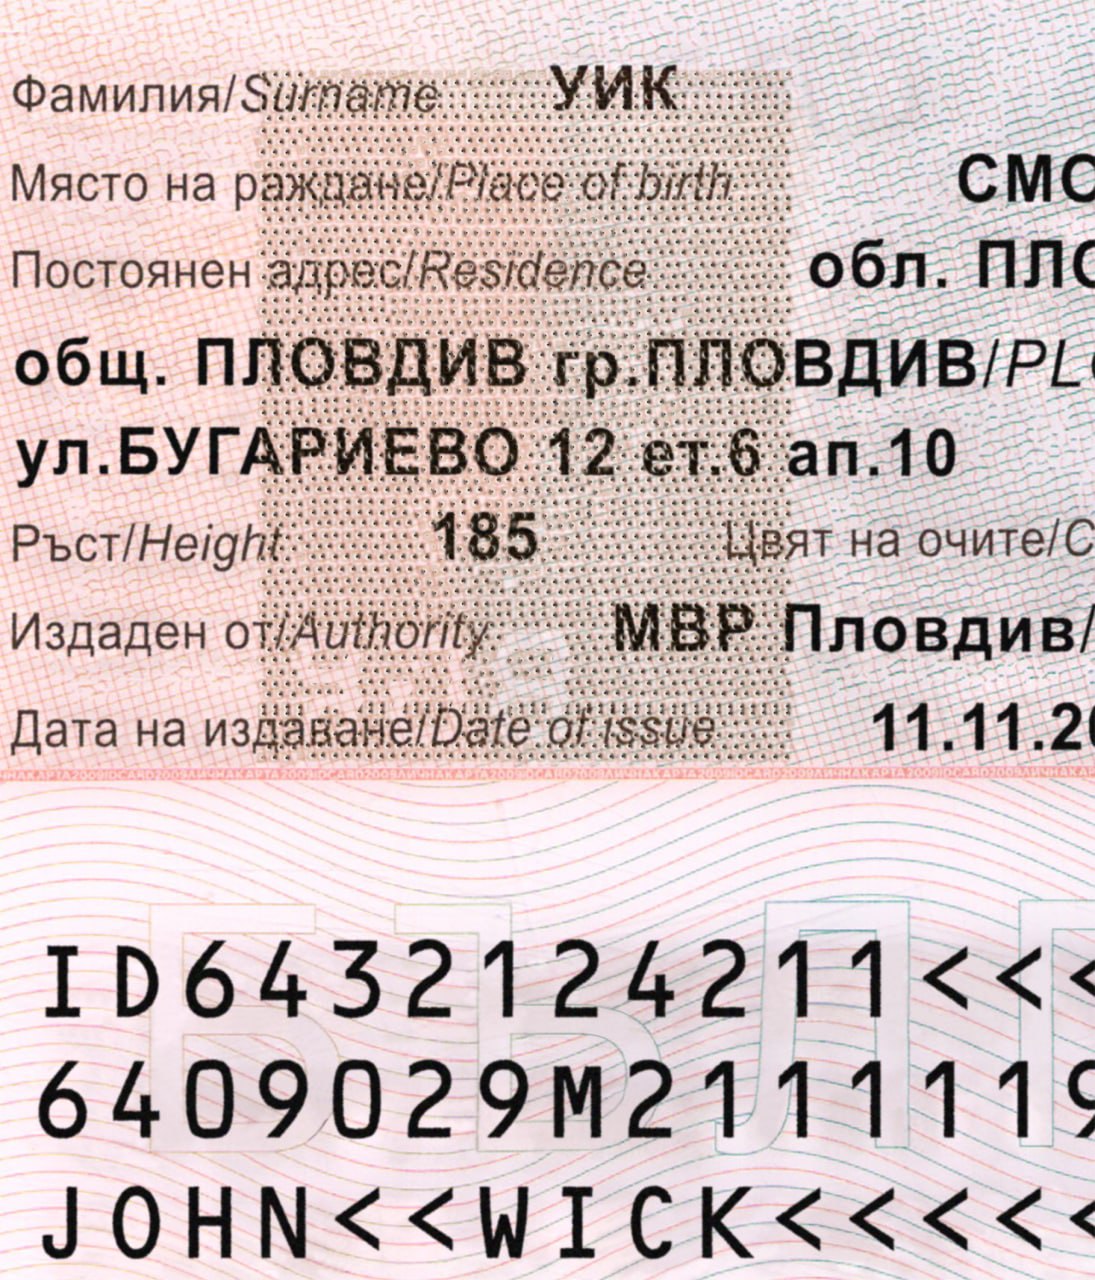 Bulgaria ID Card 2010+-4